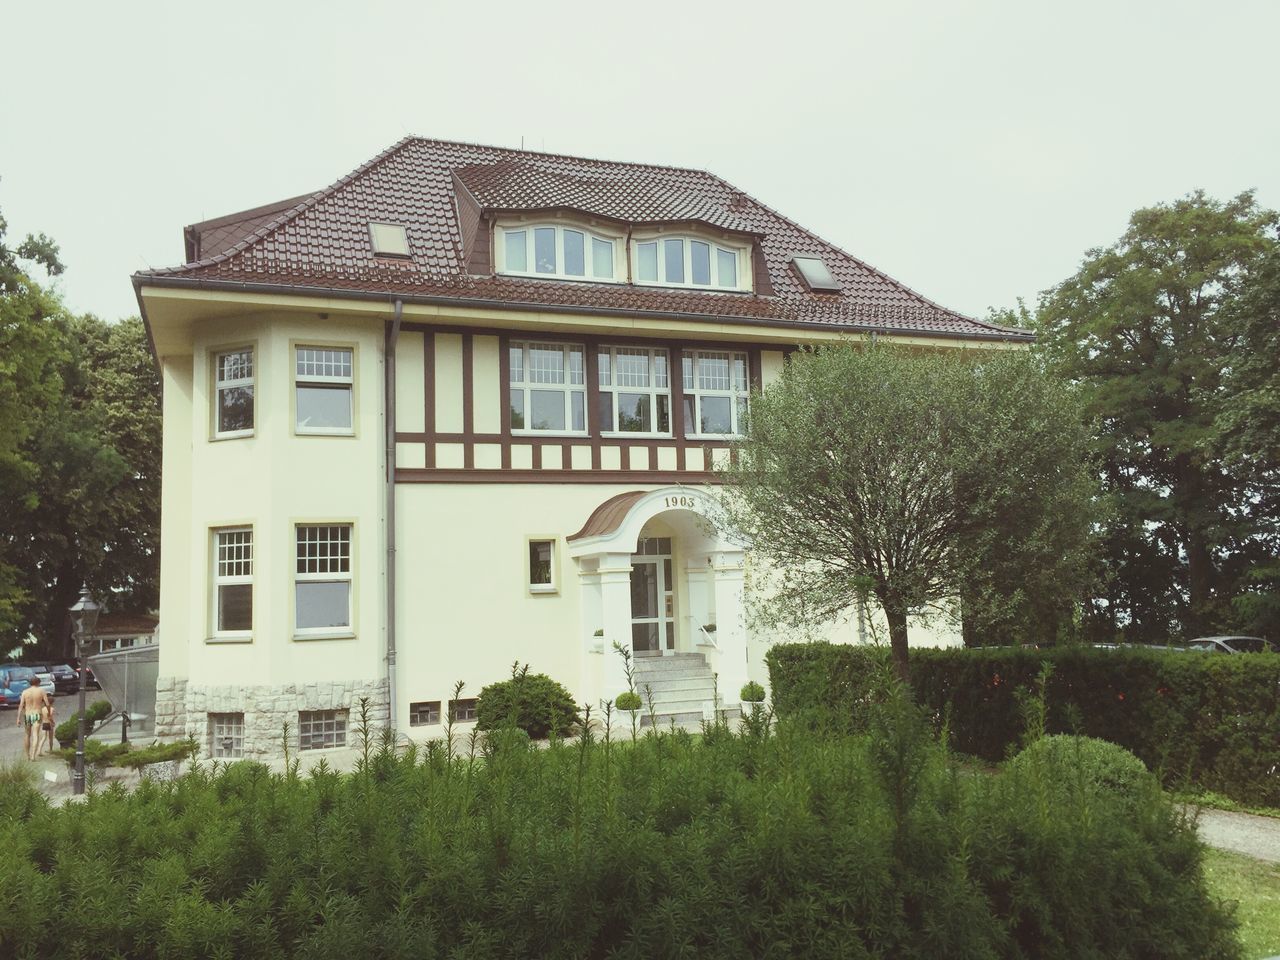 Haus in berlin